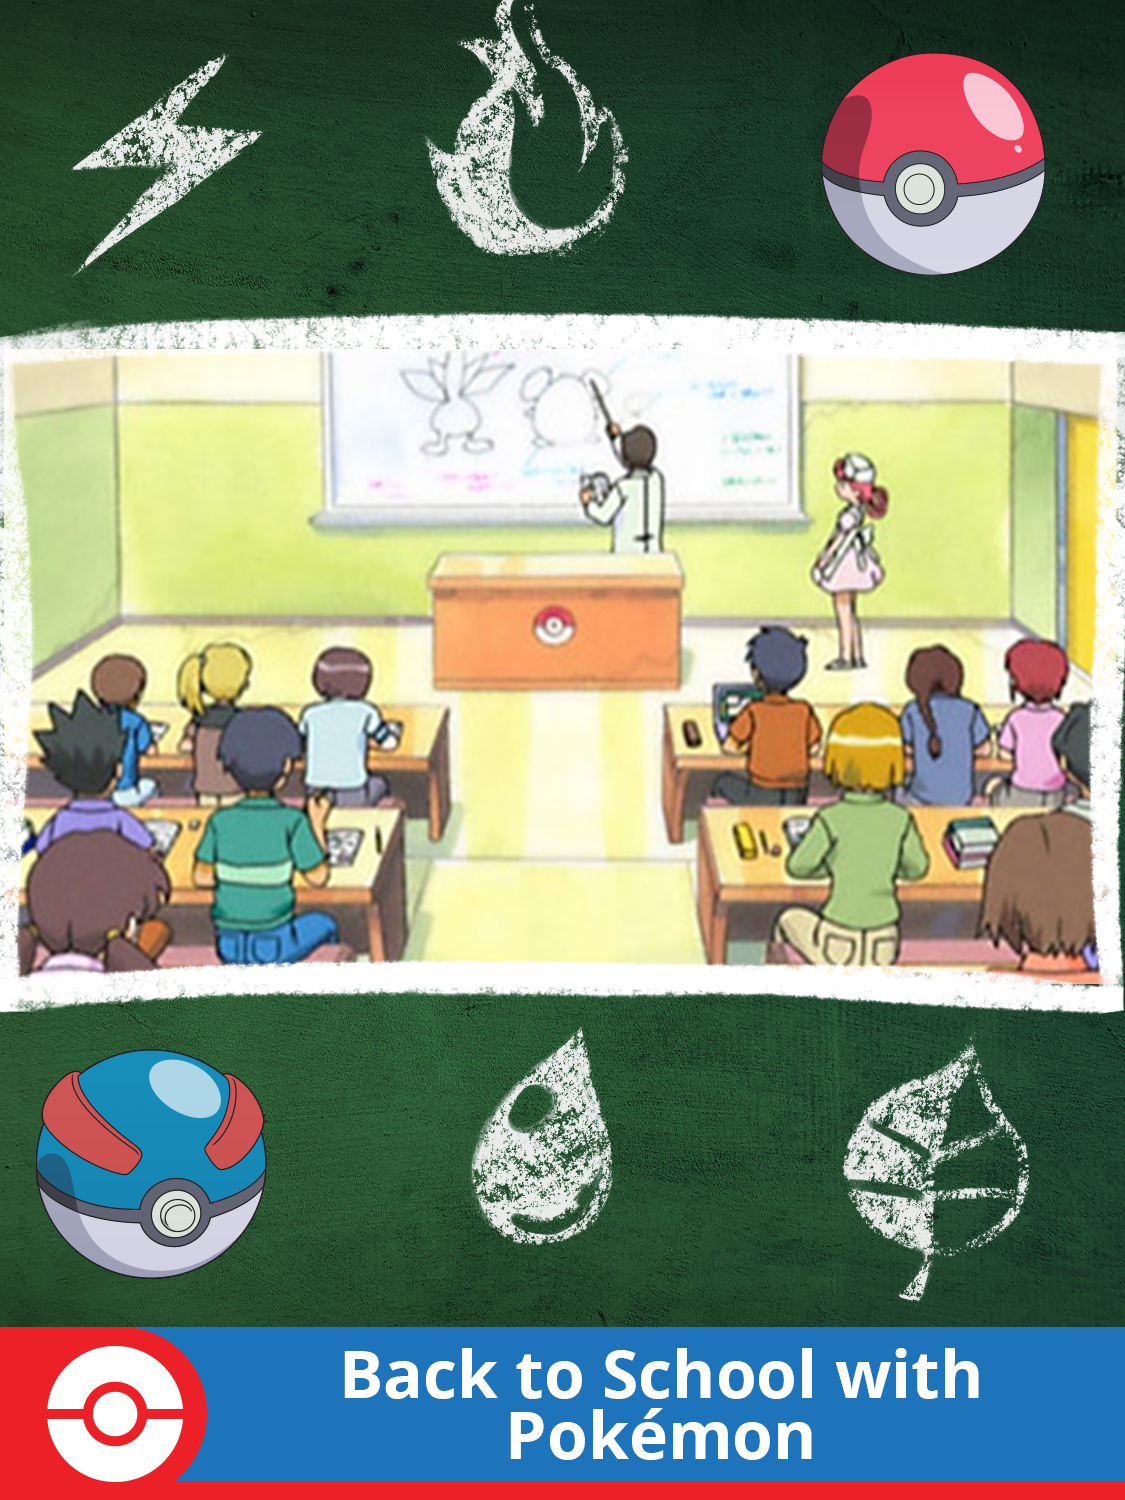 Back to School with Pokémon